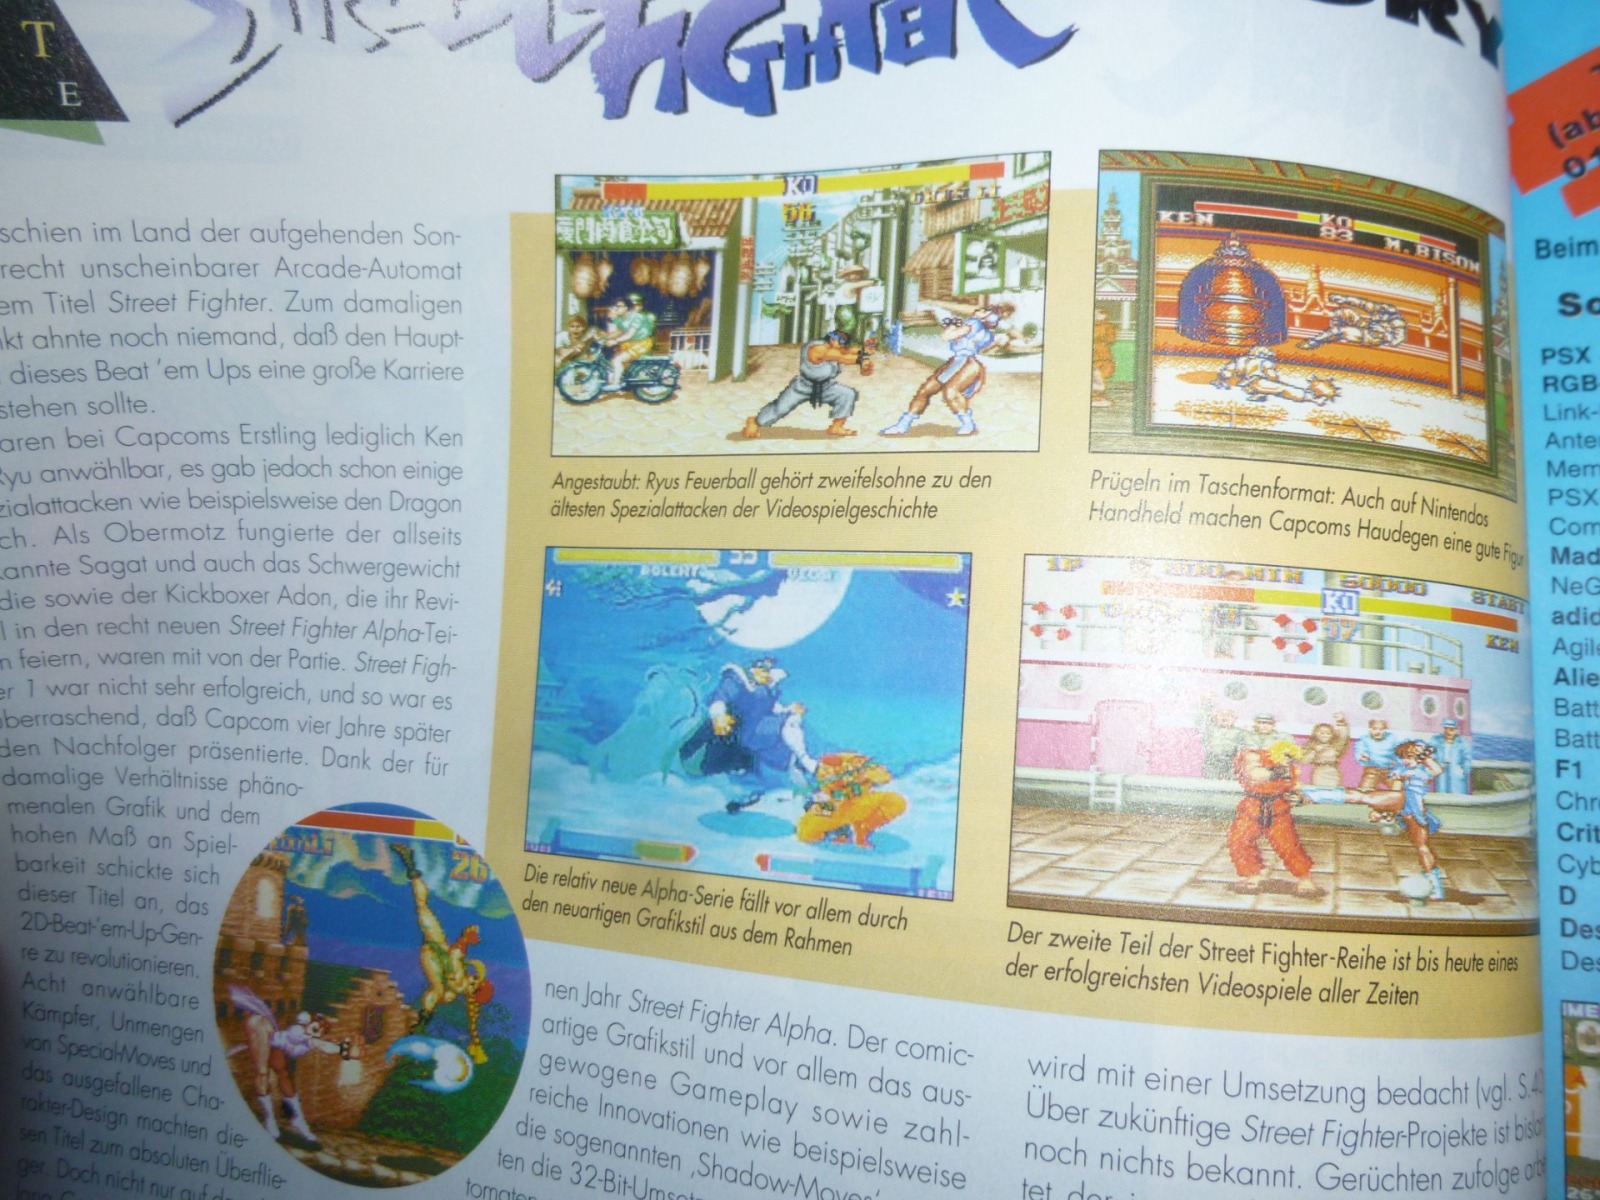 TOTAL Das unabhängige Magazin - 100% Nintendo - Ausgabe 10/96 1996 14